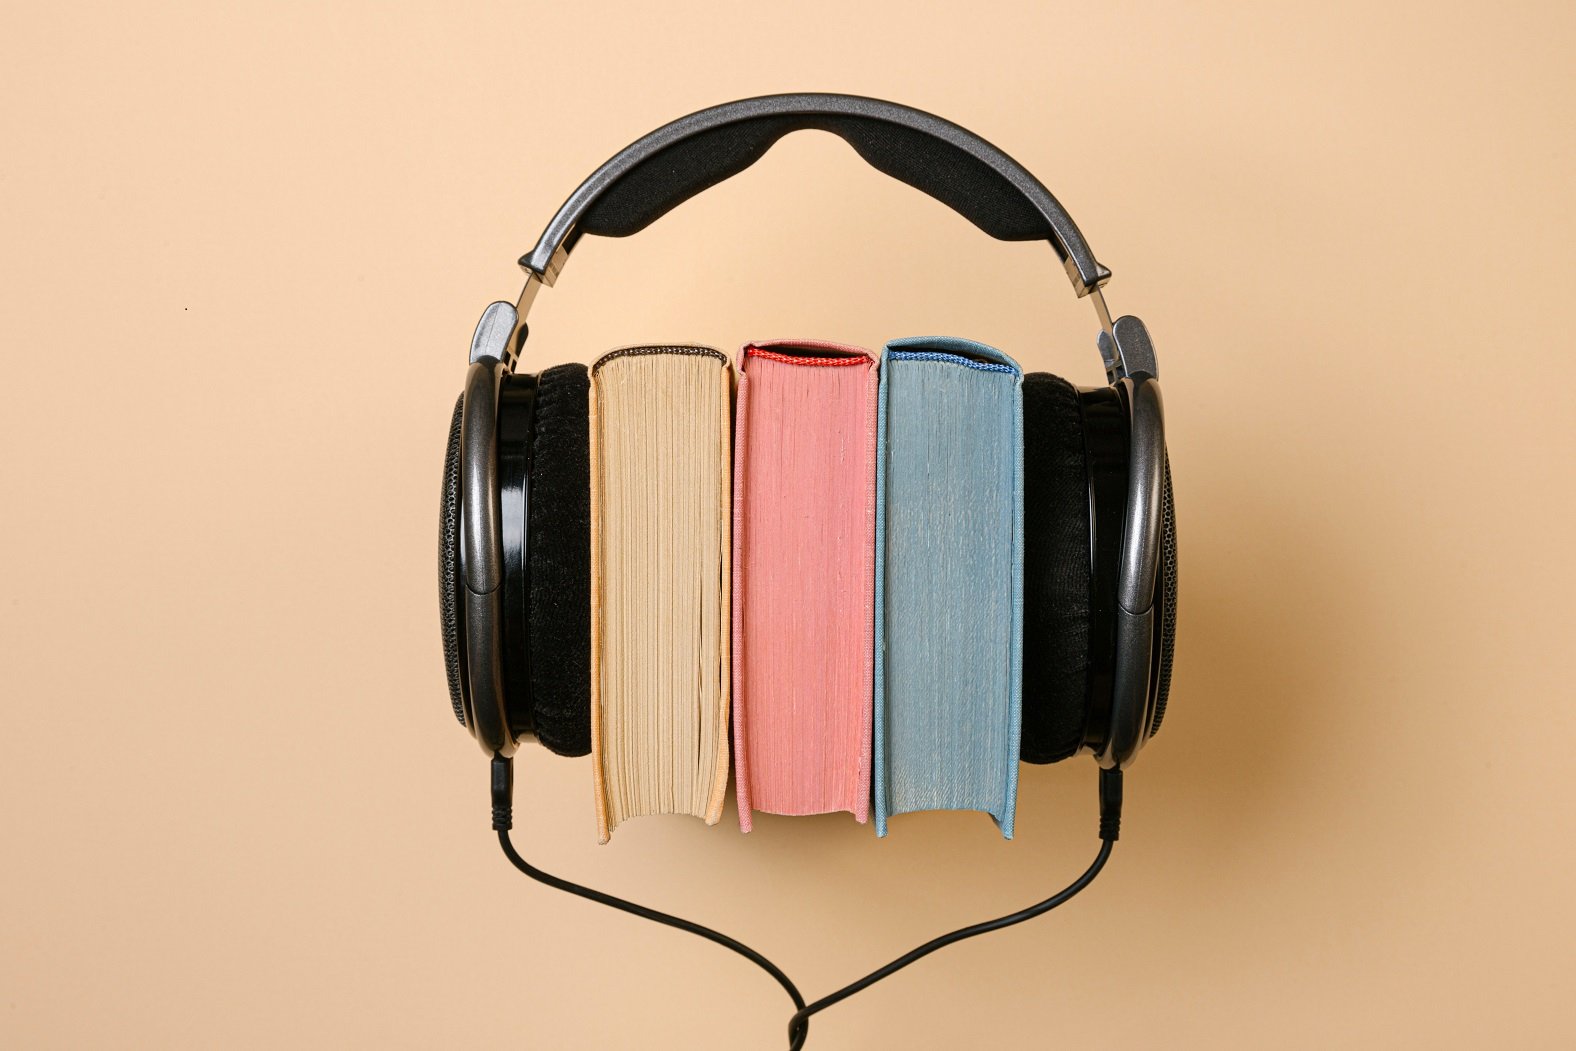 60 días gratis en podcasts, audiolibros y contenidos infantiles con Podimo